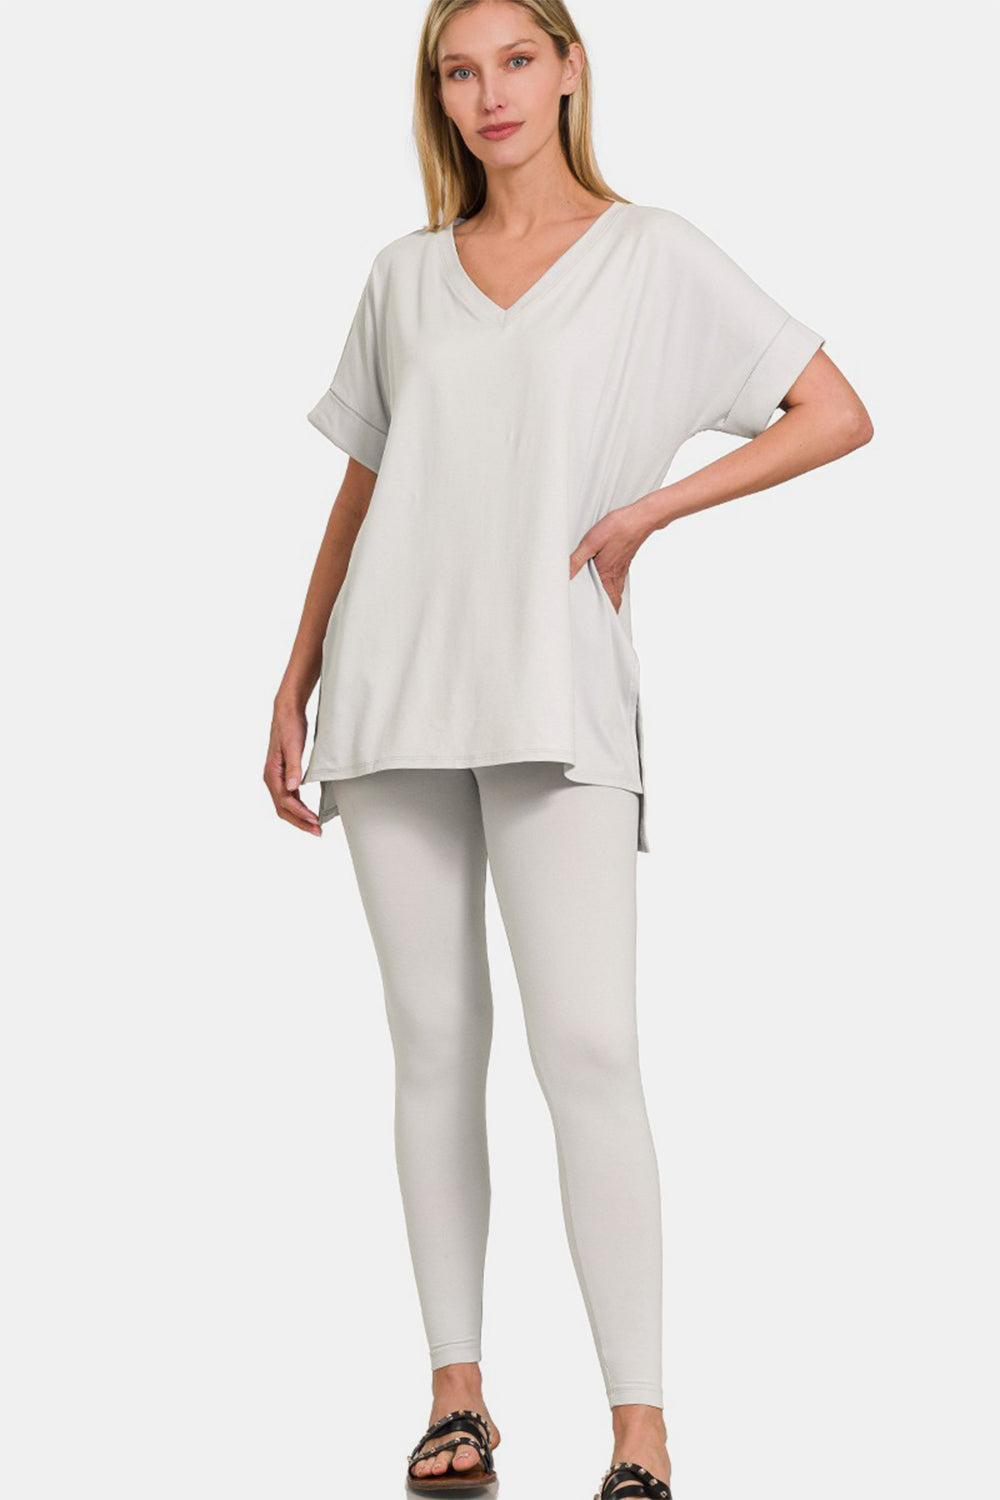 Zenana Light Cement V-Neck Rolled Short Sleeve T-Shirt and Leggings Lounge Set Lt Cement Trendsi